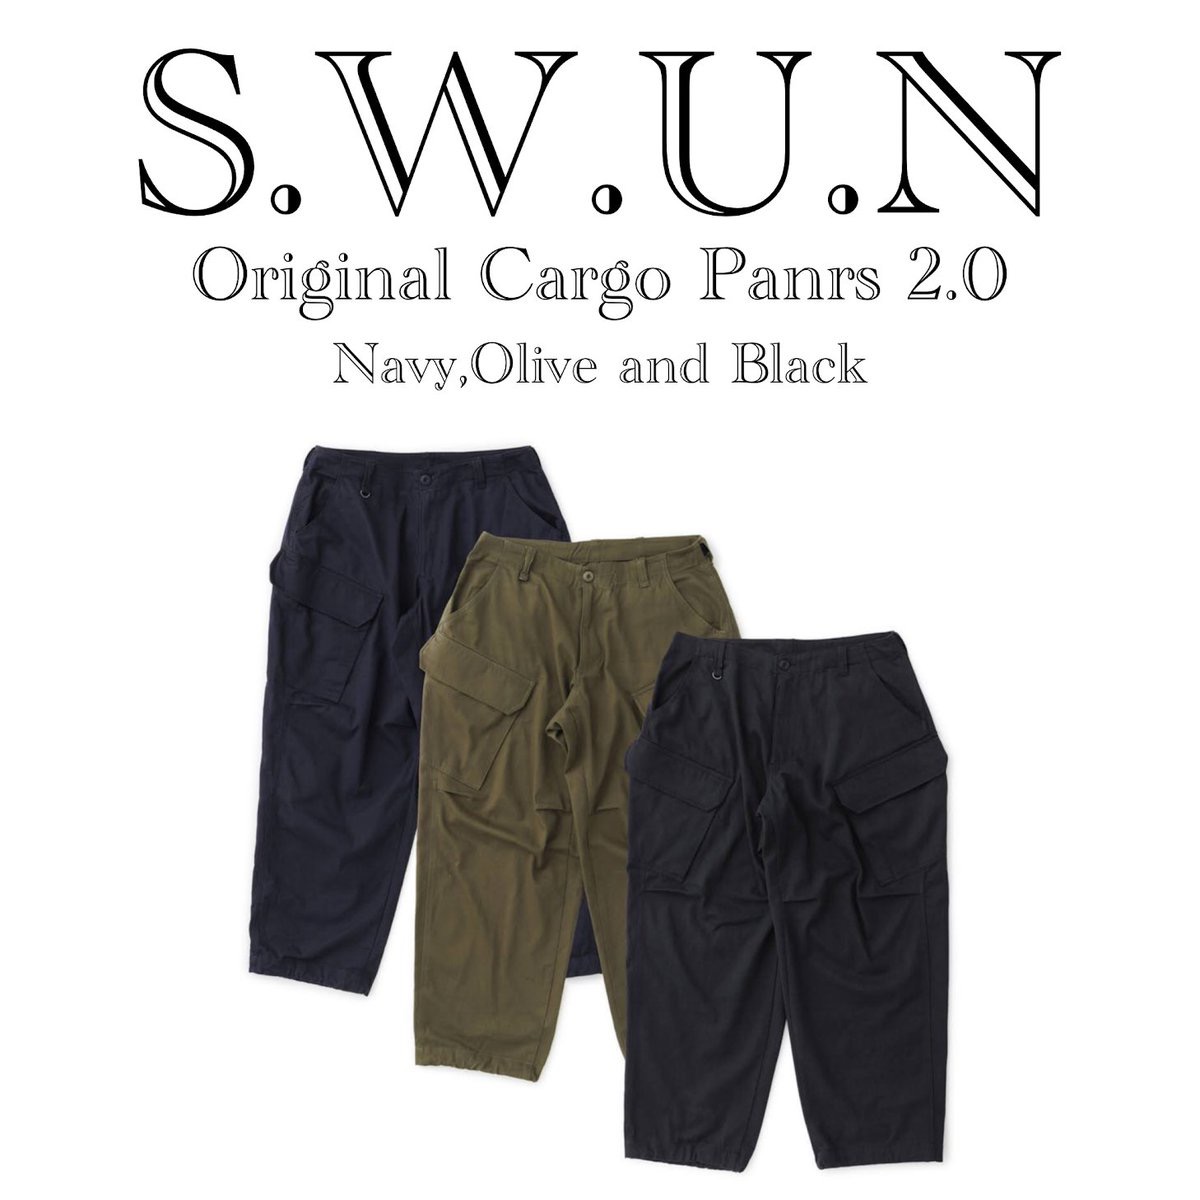 S.U.W.N Original Cargo Pants 2.0 (Black)